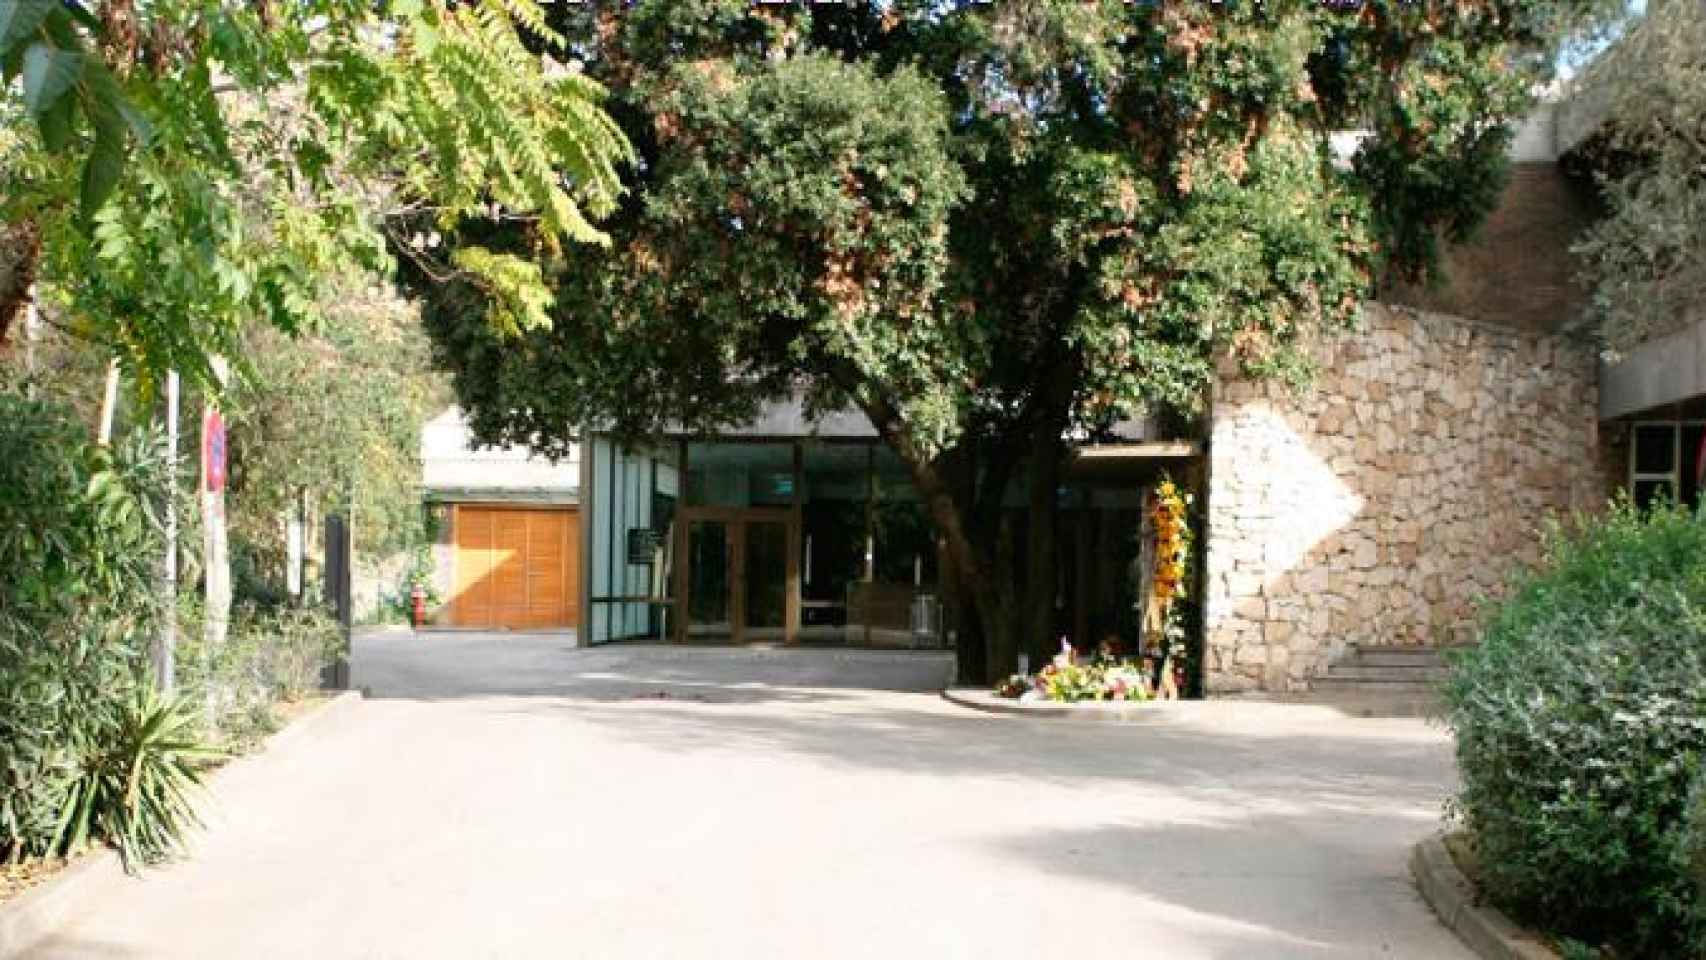 Entrada al crematorio de Collserola, situado en mitad del parque natural junto a Barcelona / CG